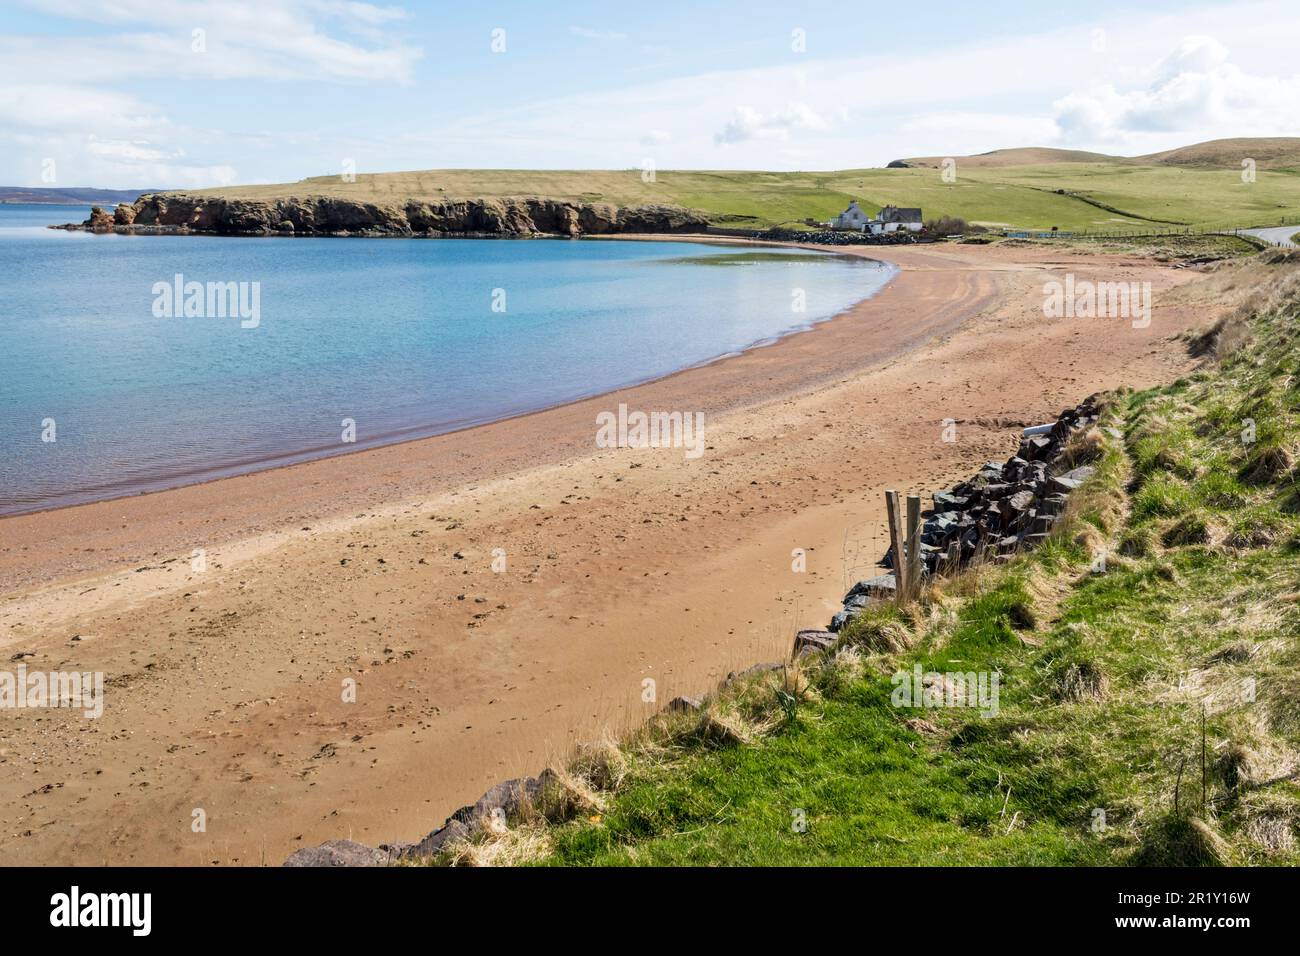 Der Strand in Reawick im Westen des Shetland Mainland, in der Bucht von Rea Wick, hat aufgrund des lokalen roten Granits roten Sand. Stockfoto